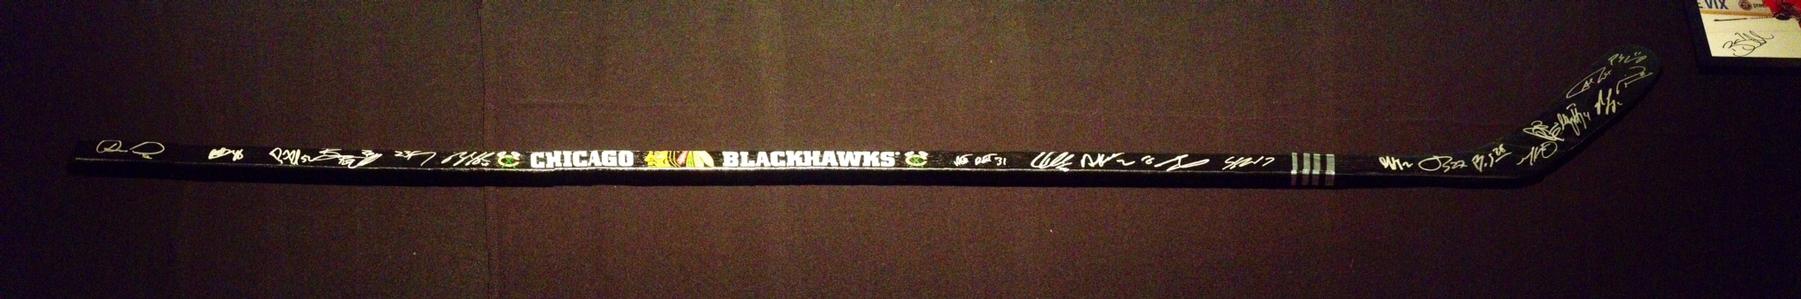 Autographed Chicago Blackhawks Hockey Stick. Signed by 2013-14 Blackhawks.